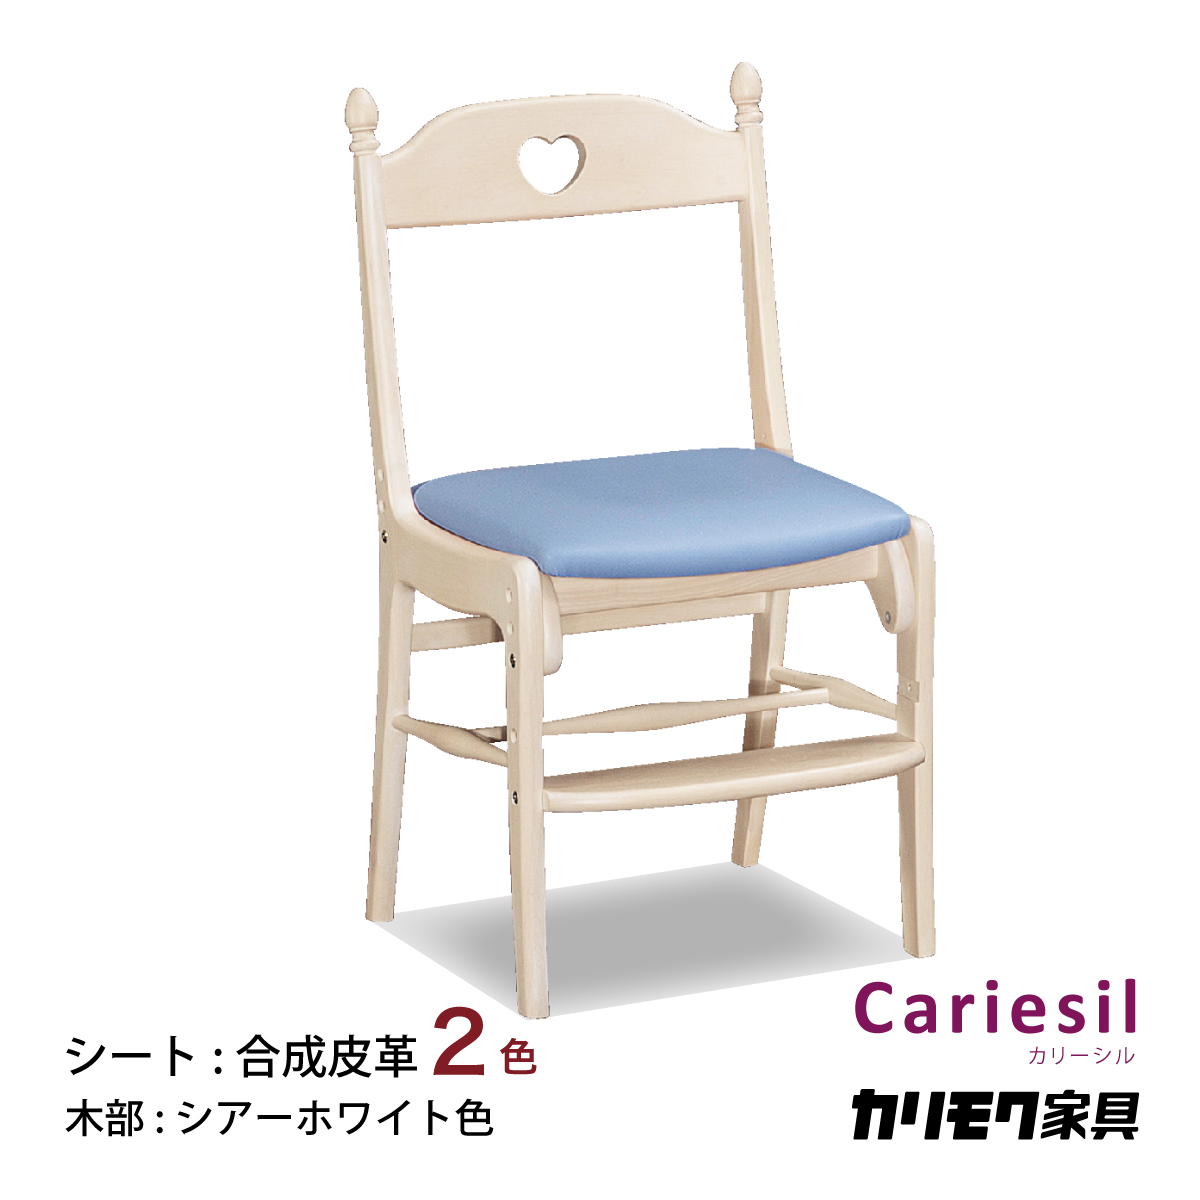 カリモク 学習椅子 XR2101 デスクチェア シアーホワイト シート2色 ハートが可愛い カリーシル カントリー 安心 国産 karimoku